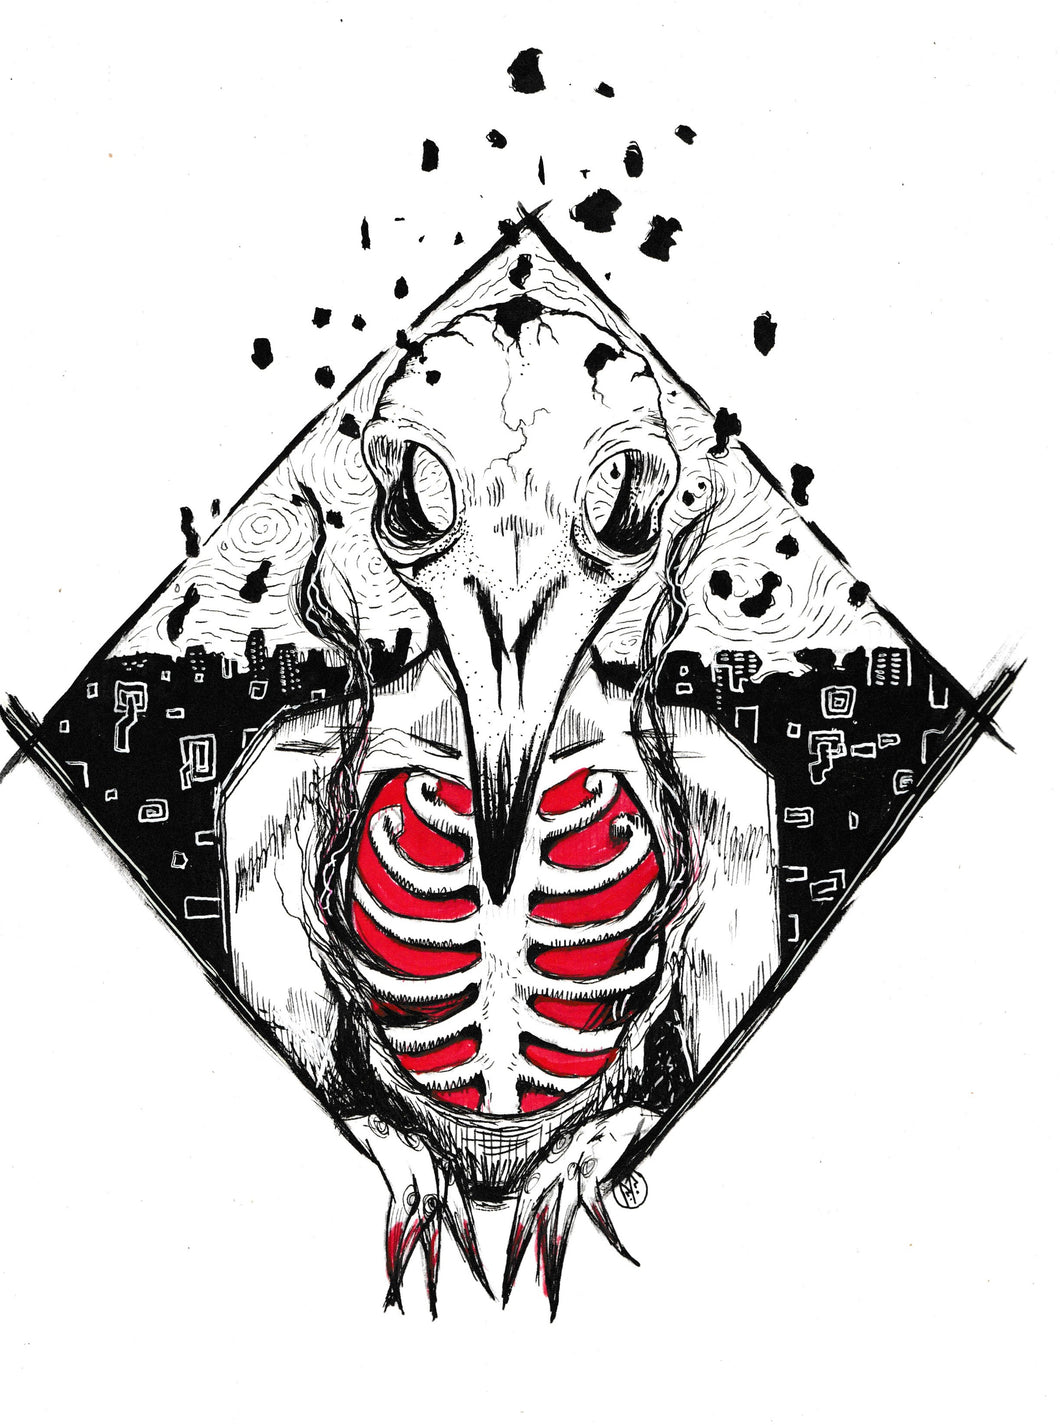 Bringer of pestilence - Alternate reality windows - Bird skull and crumbling world